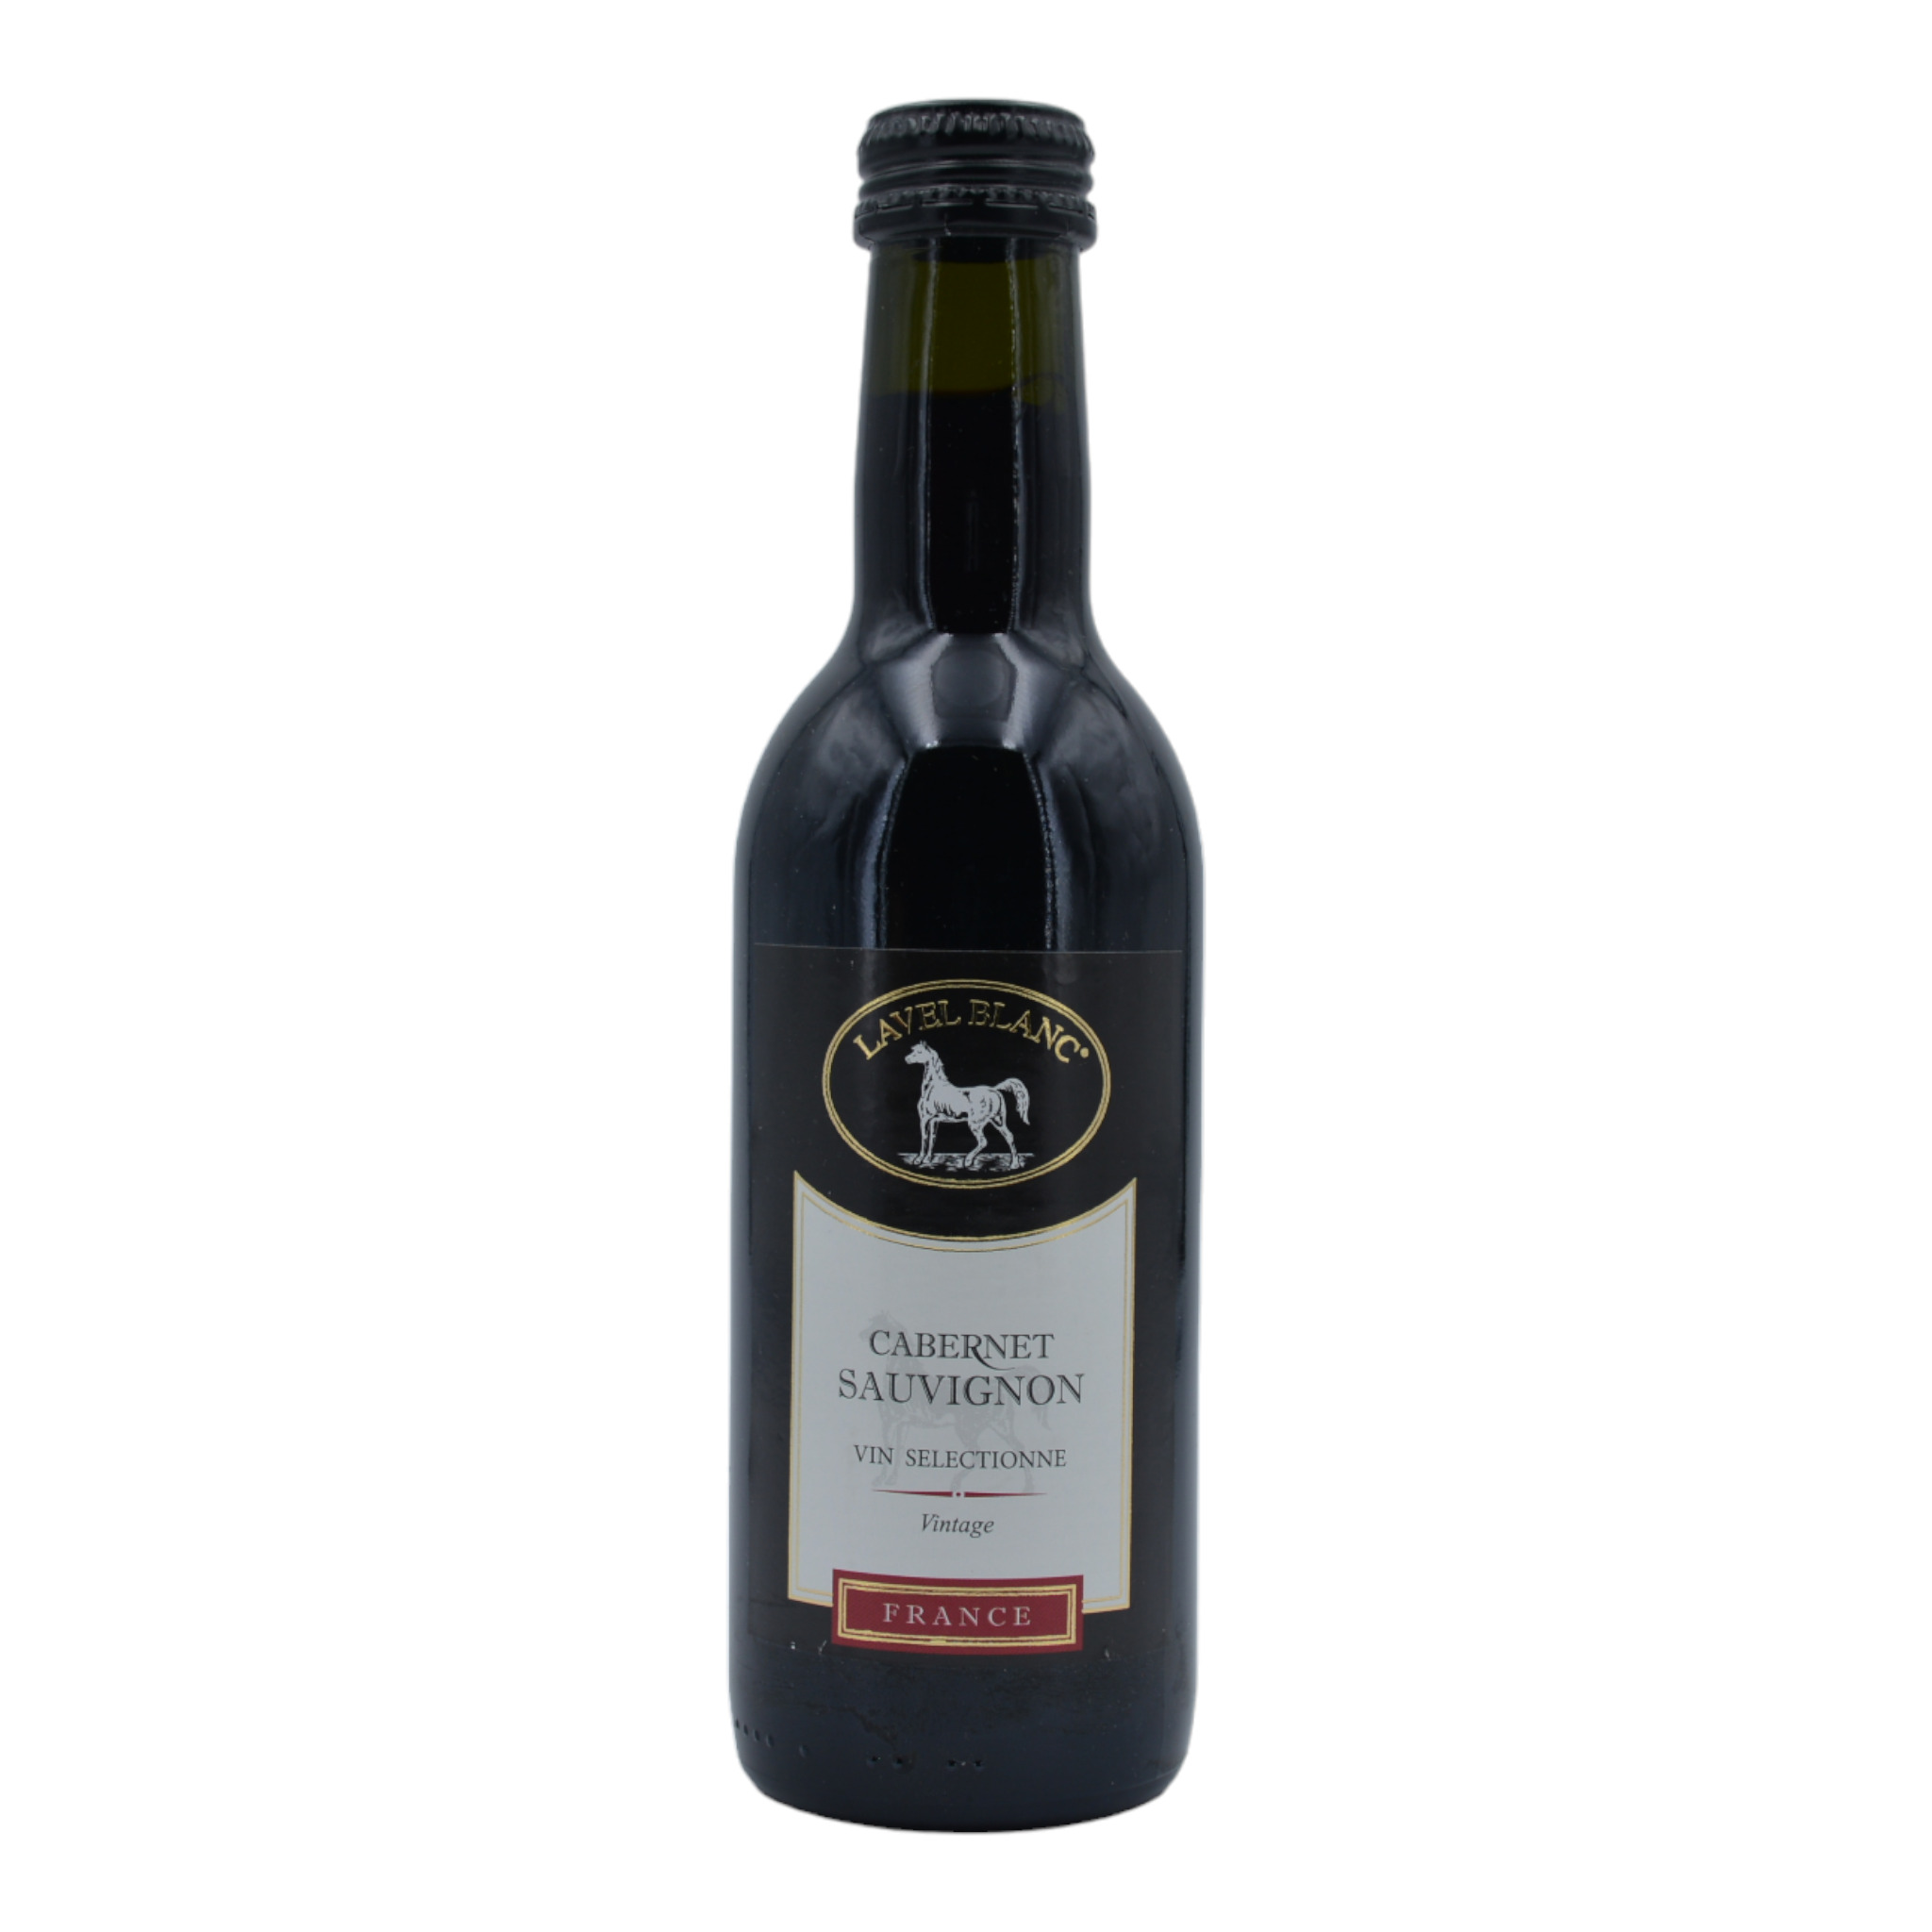 3322720642603 - Lavel Blanc Cabernet Sauvignon Vin Selectionne Vintage f